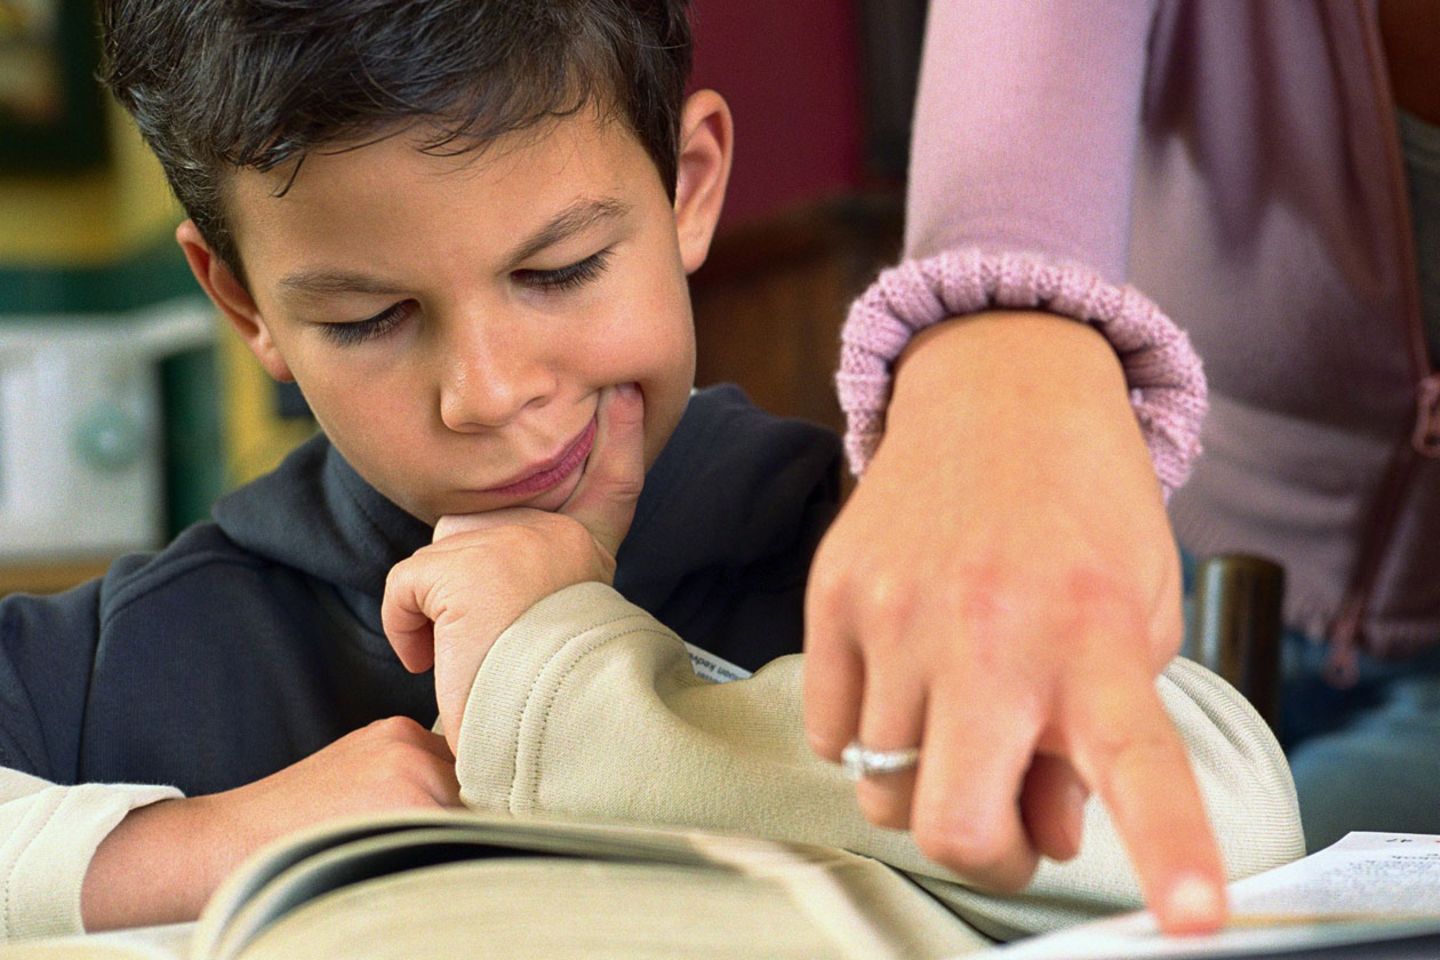 Bis zur siebten Klasse ist etwas Hilfe bei den Hausaufgaben völlig in Ordnung. Ab der Mittelstufe sollten Schüler sie selbstständig erledigen.